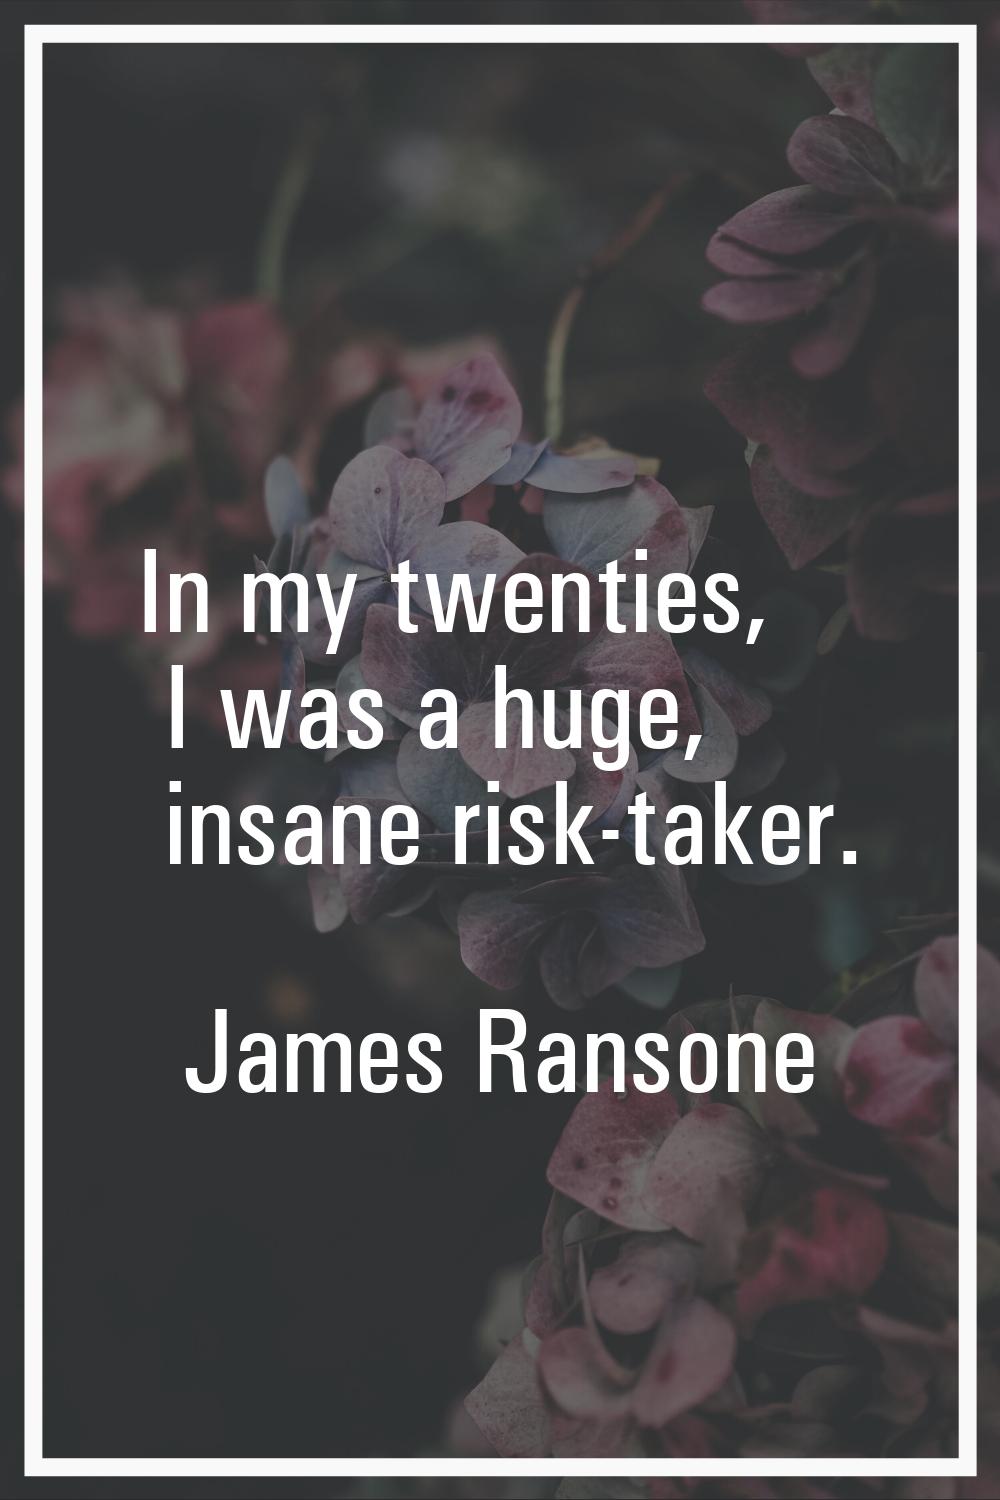 In my twenties, I was a huge, insane risk-taker.